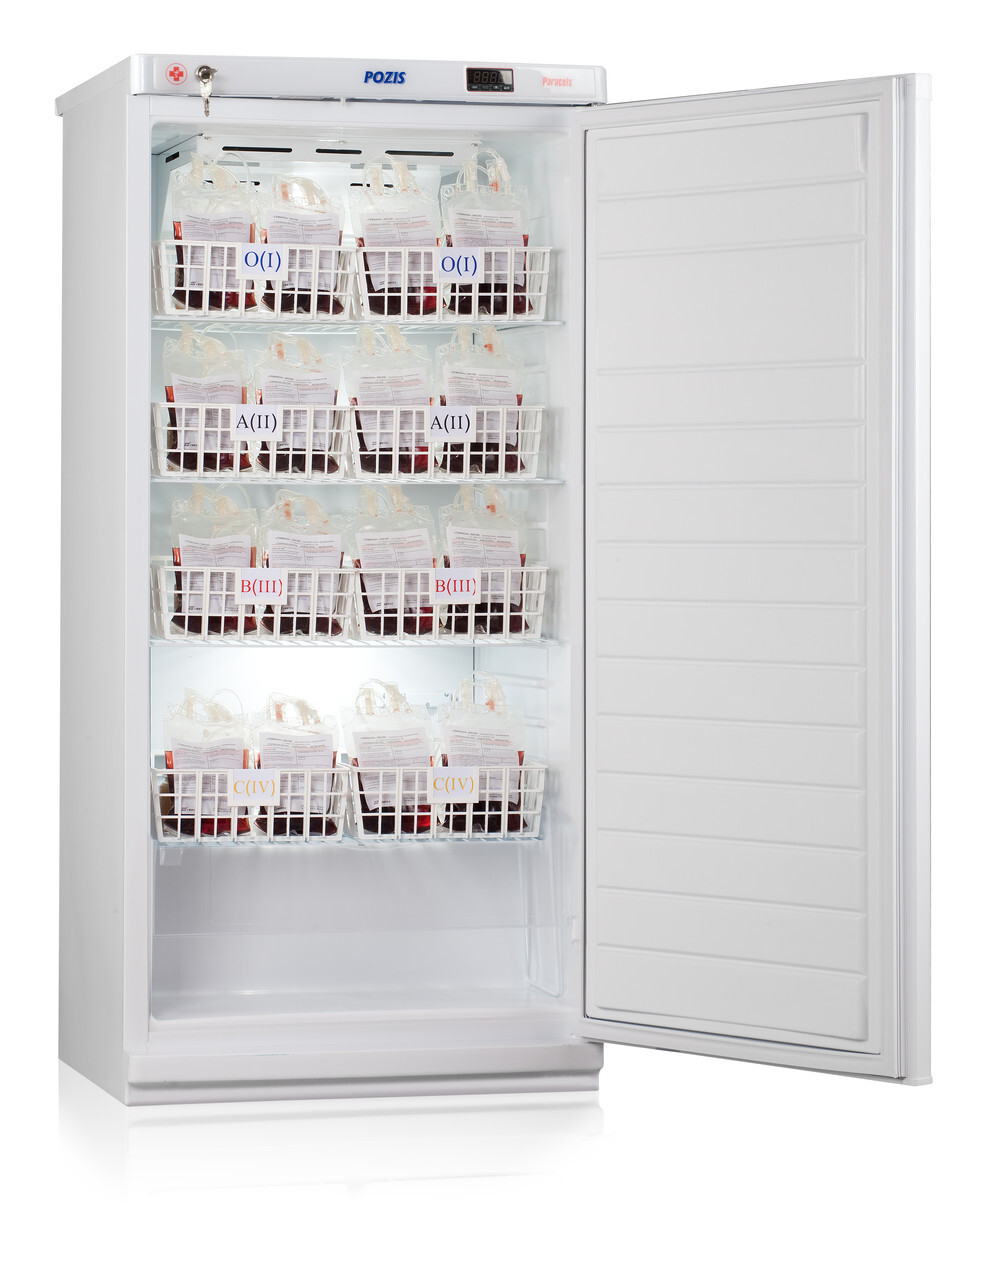 Pozis 117. Холодильник для хранения крови хк-250-1 Позис. Фармацевтический холодильник хф-250-1 "Позис". Холодильник Позис хк-250-01. Холодильник Позис ХЛ 250.